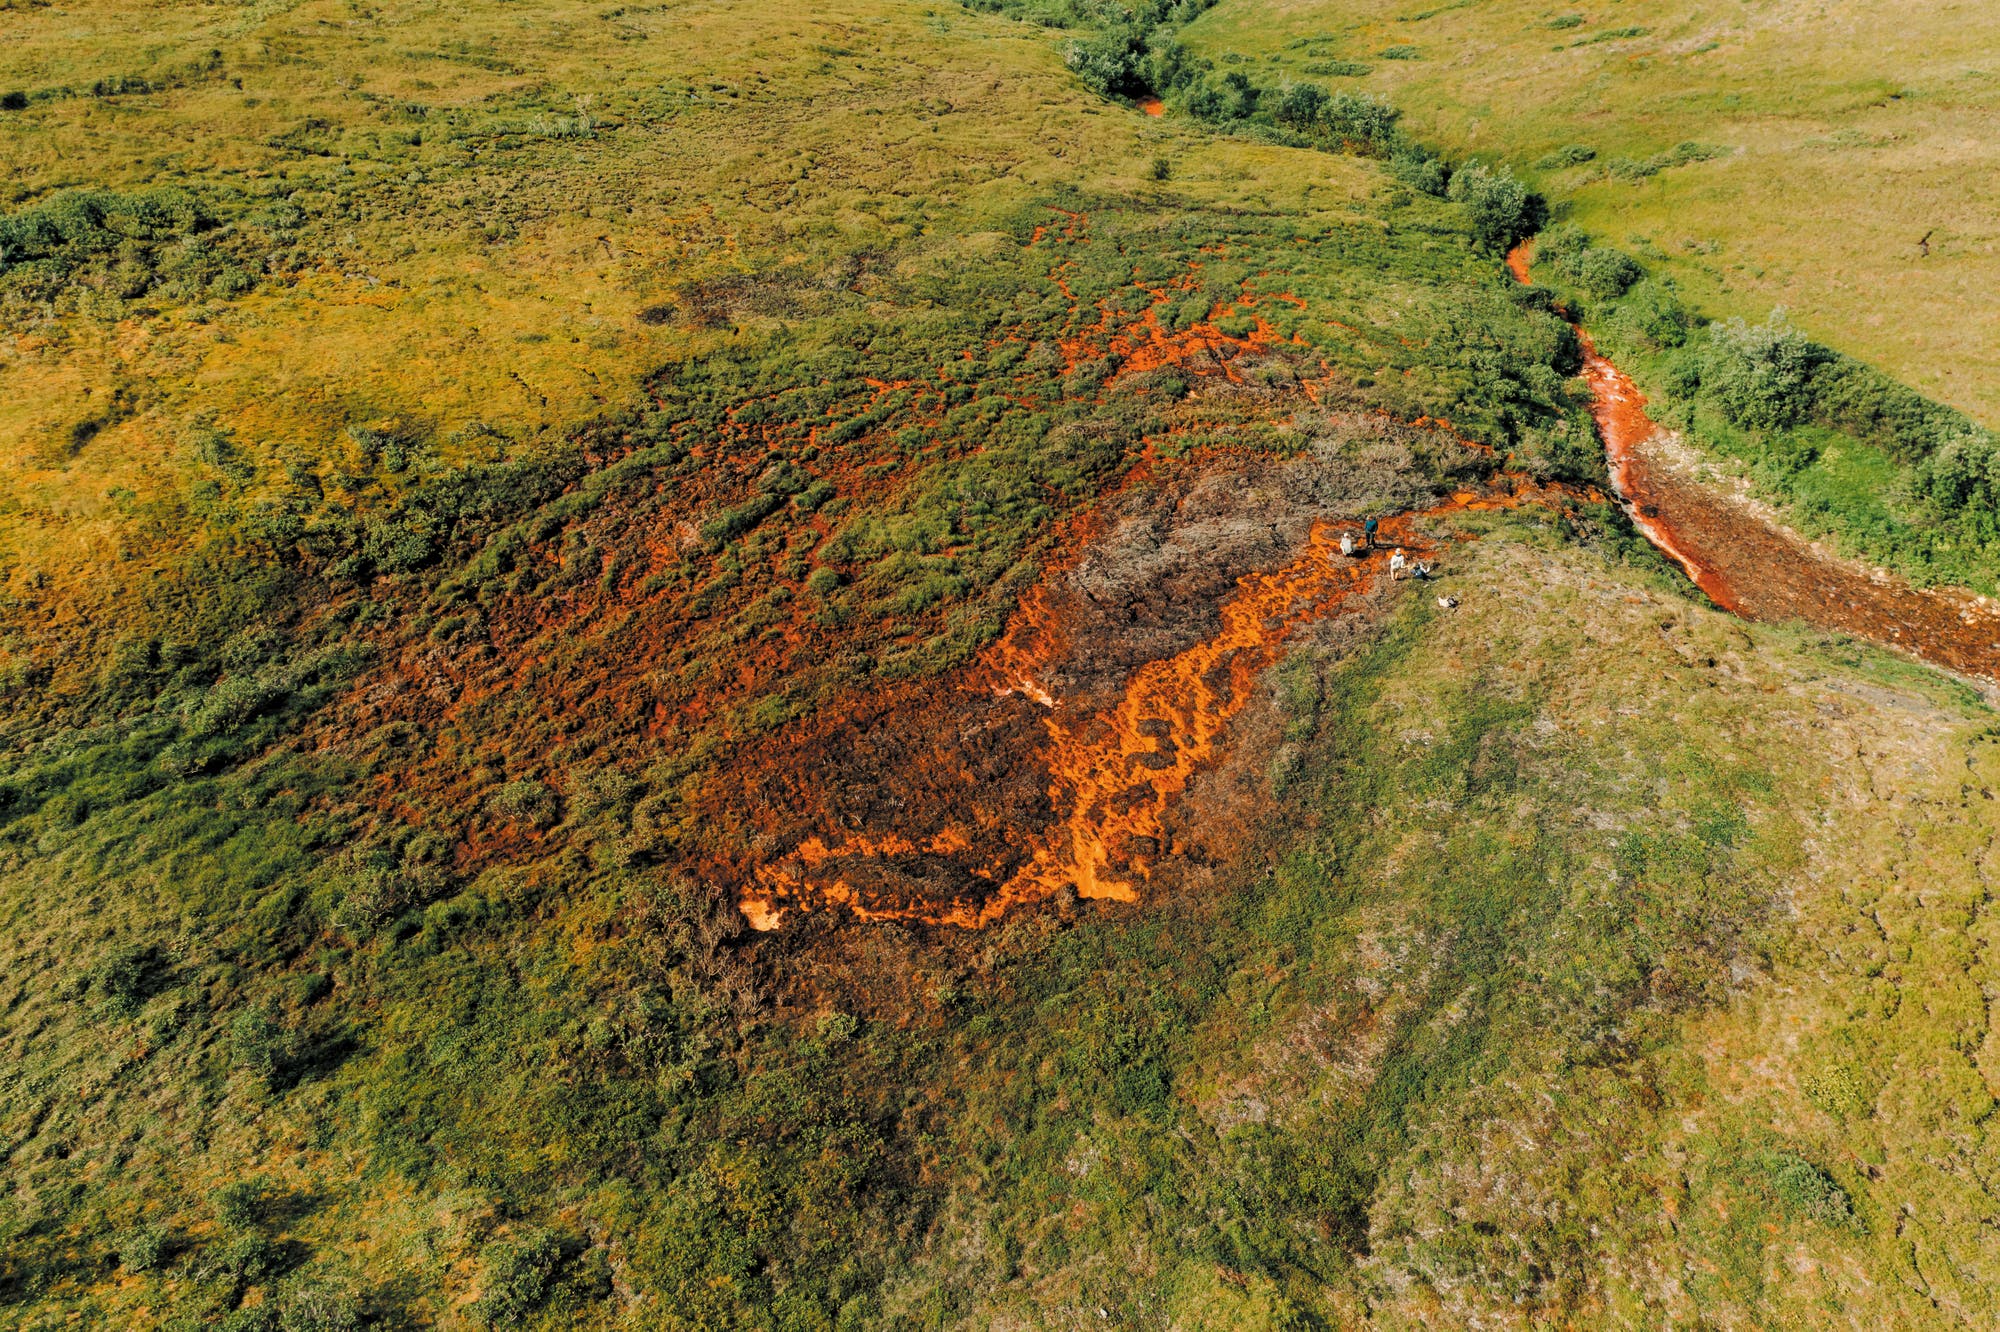 Luftaufnahme eines grün bewachsenen Landstrichs, der durch einen rotorange schimmernden Fluss zerschnitten wird. Die Erde um den Fluss herum ist tot und sieht aus wie verbrannt